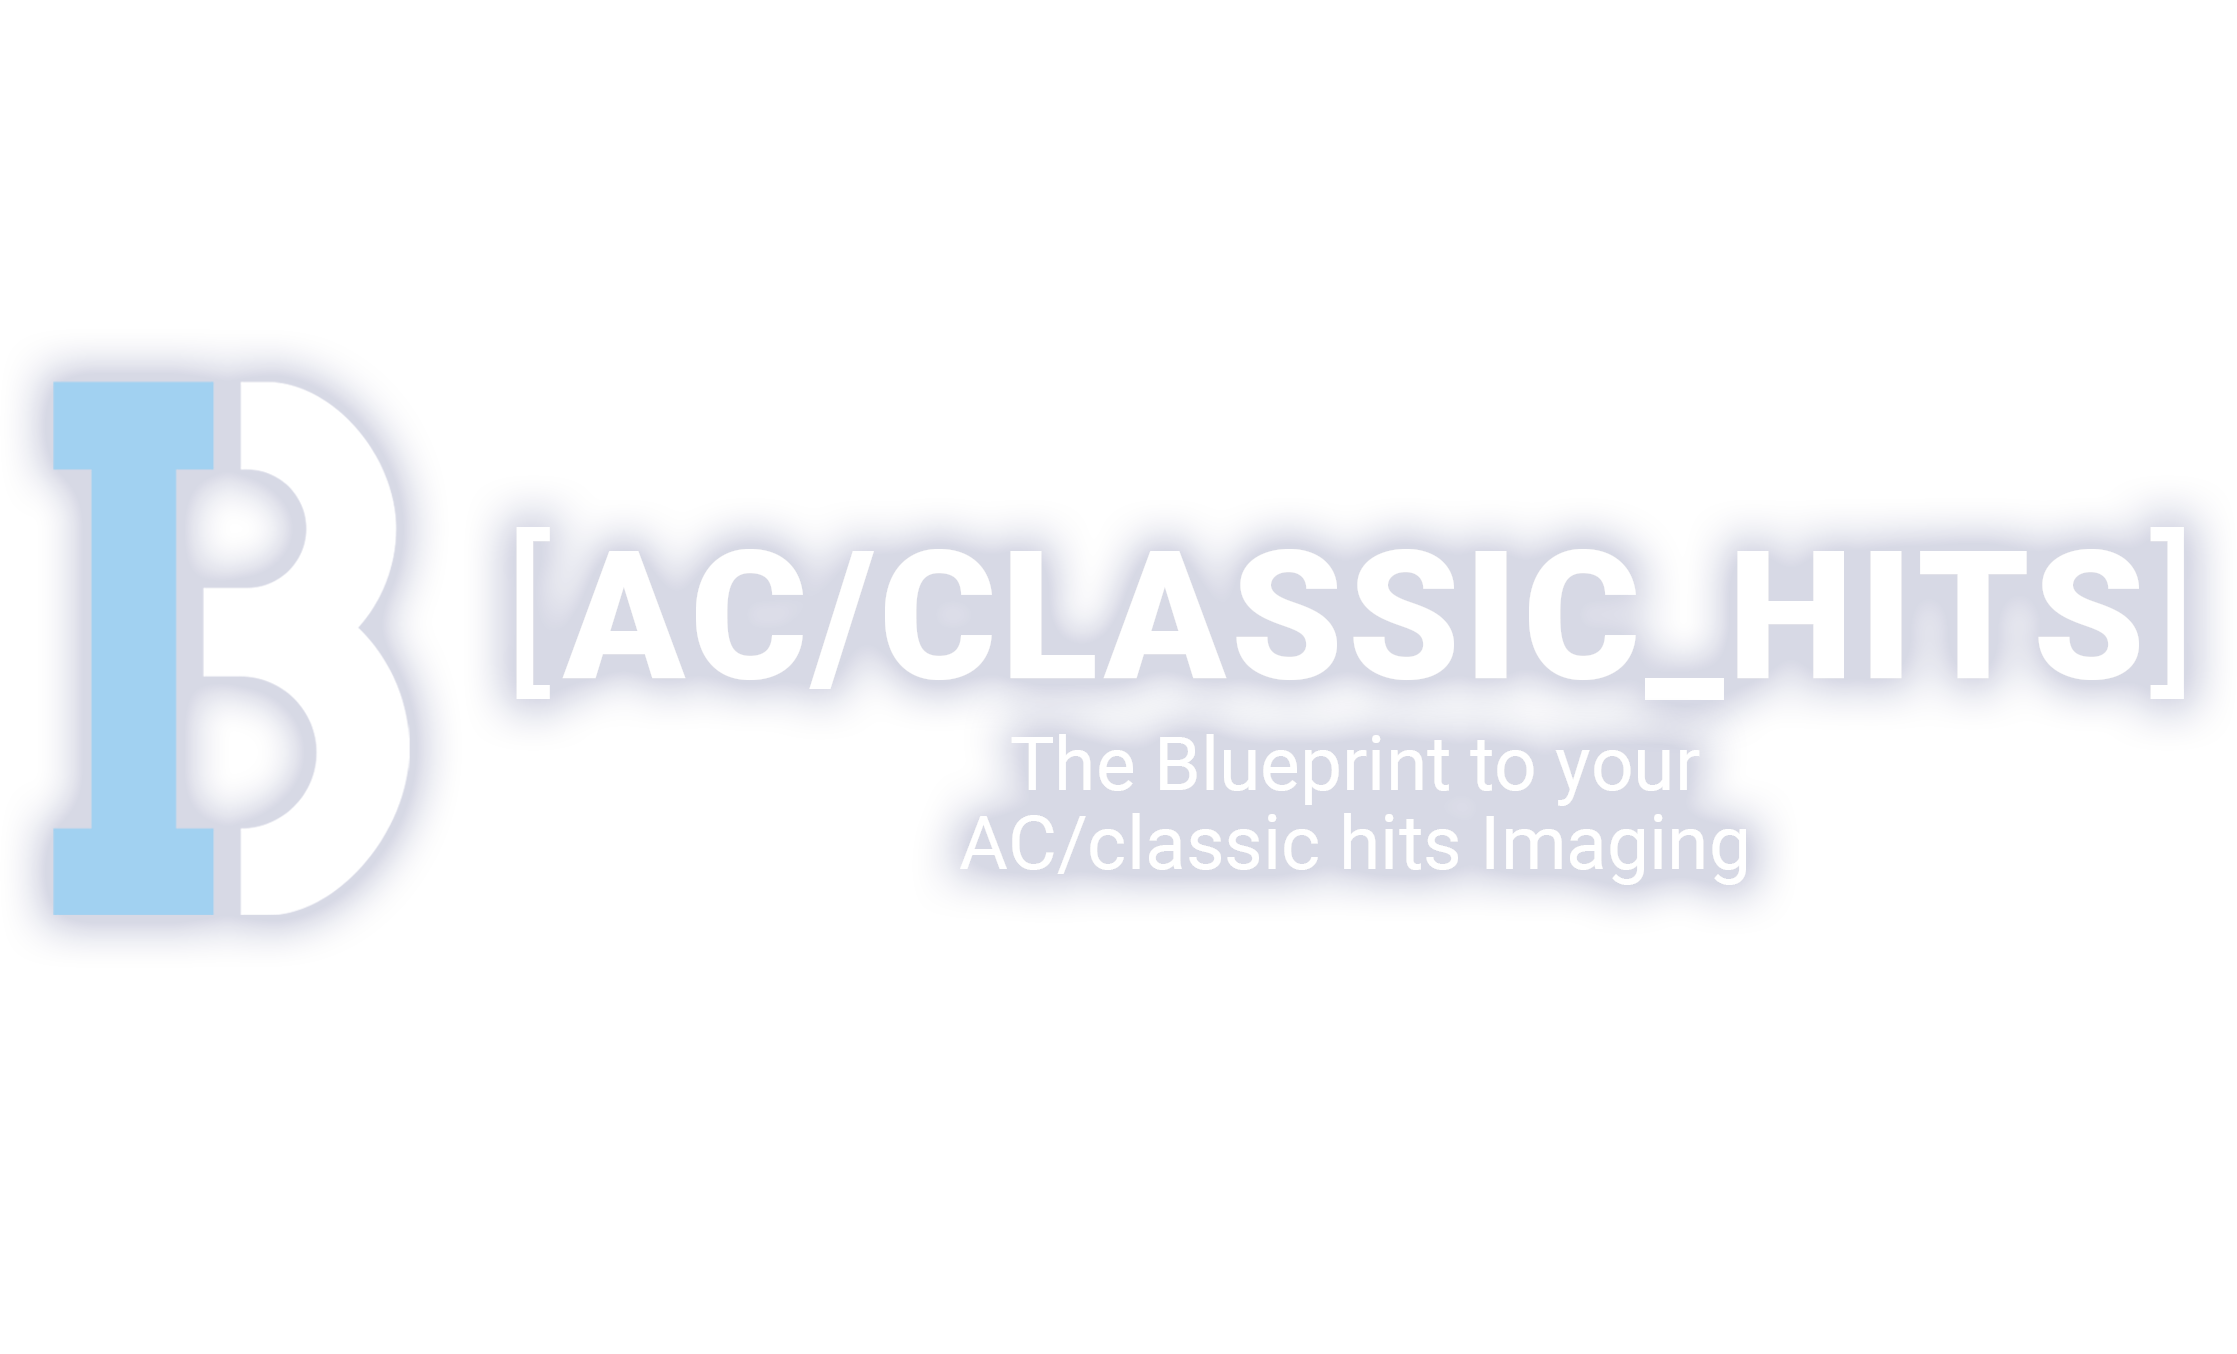 AC/Classic Hits